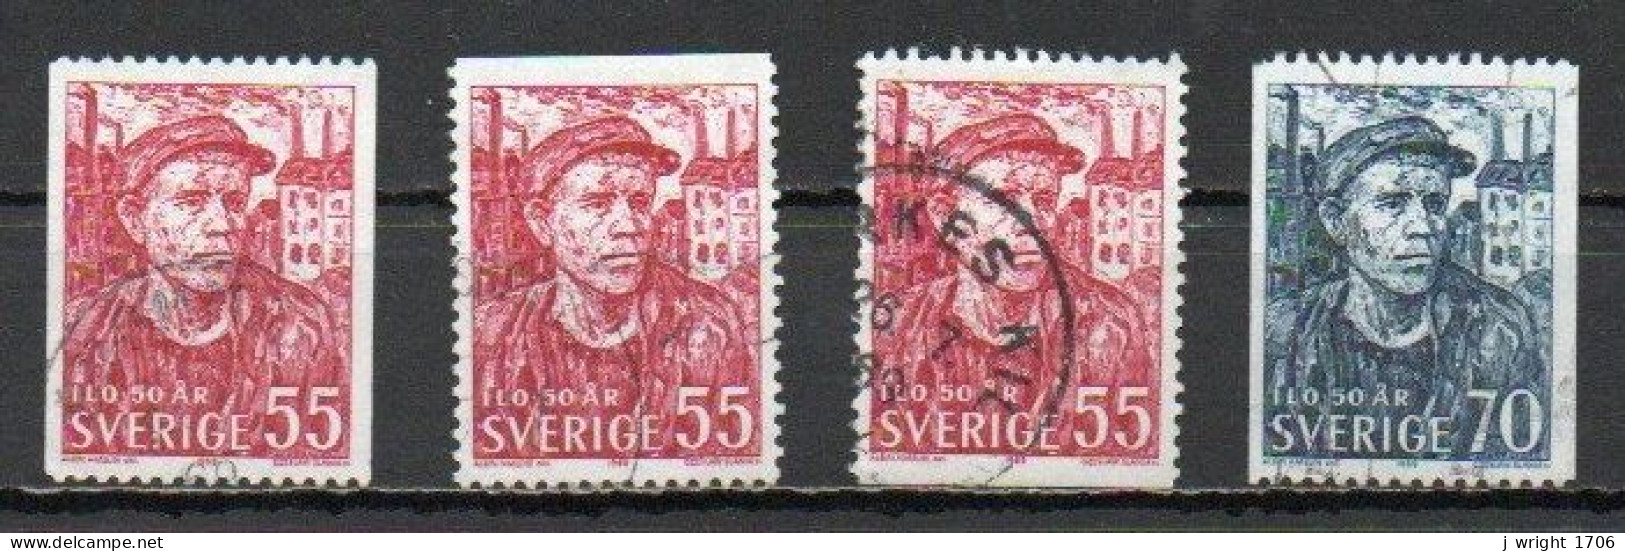 Sweden, 1969, ILO 50th Anniv, Set, USED - Usati